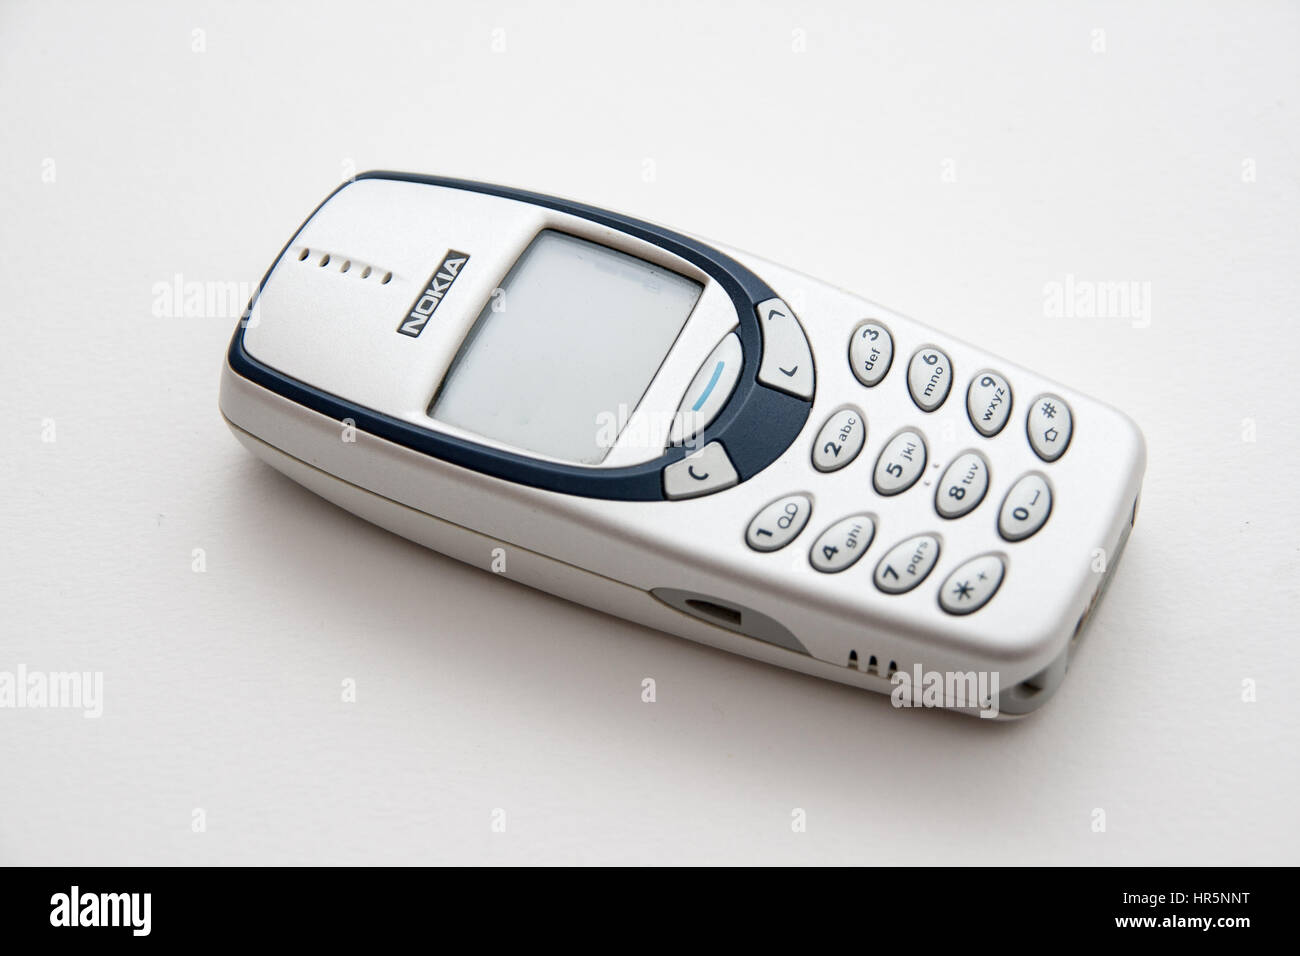 Rome, Italy - February 02, 2013: Old Nokia phone isolated on white background Stock Photo